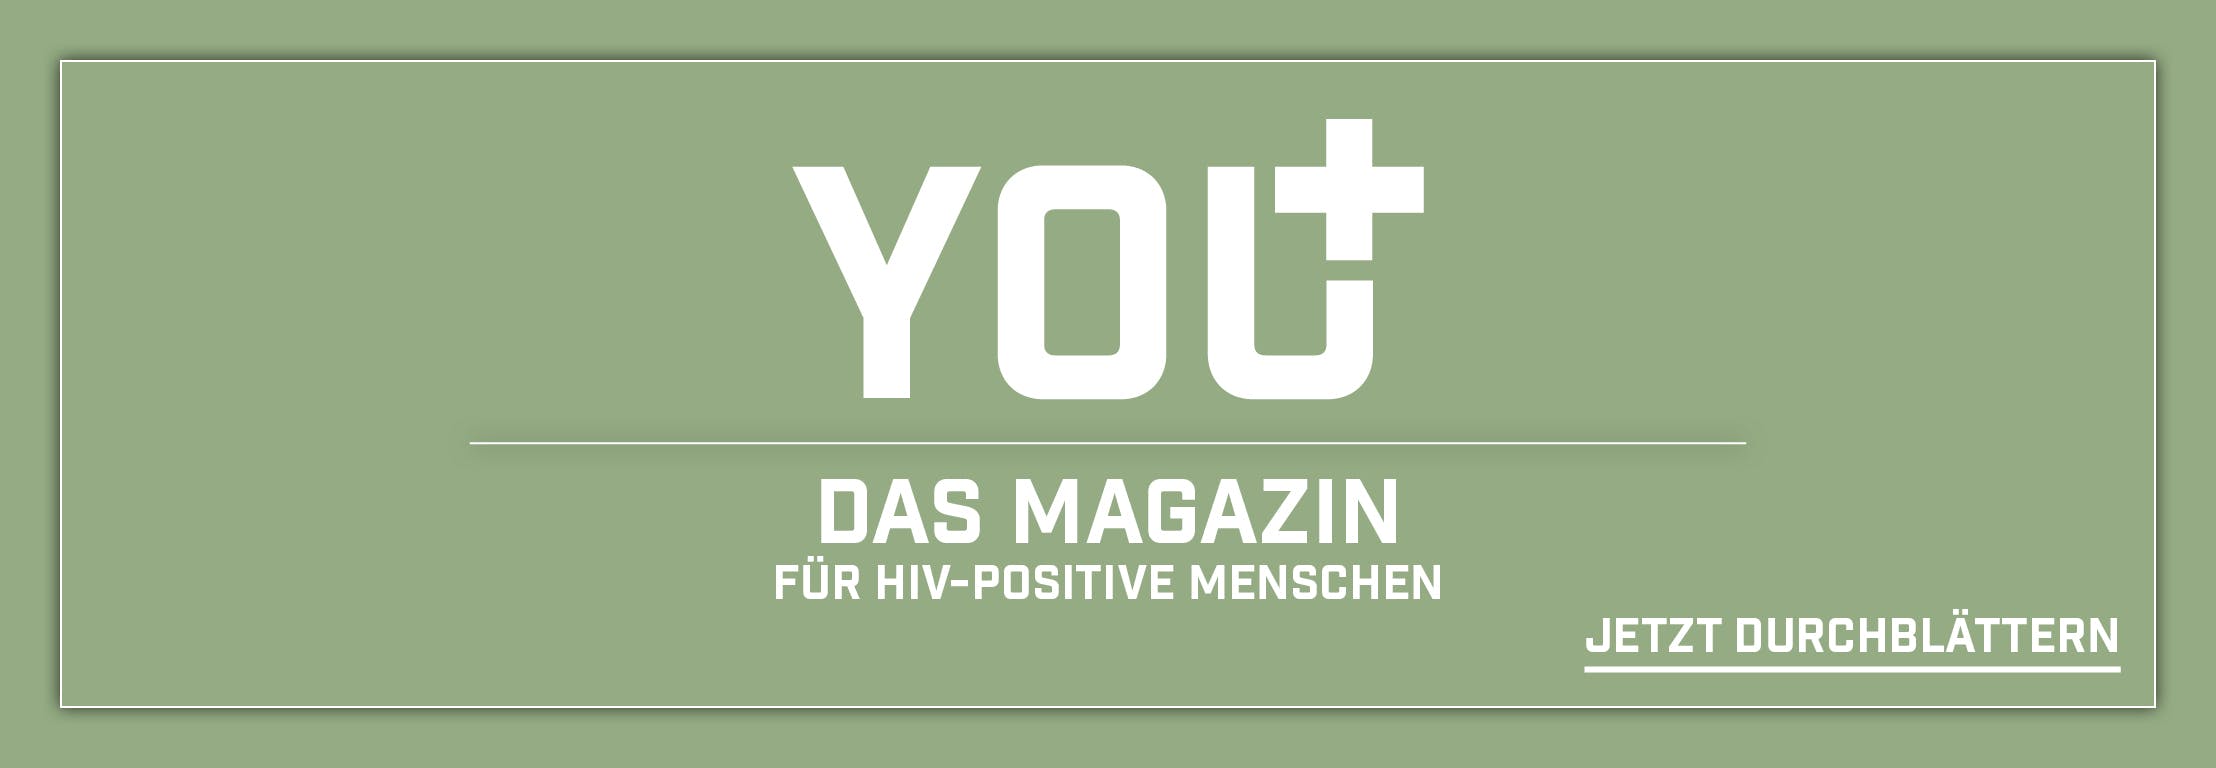 Das YOU+ ist ein HIV Magazin und richtet sich an HIV-positive Menschen